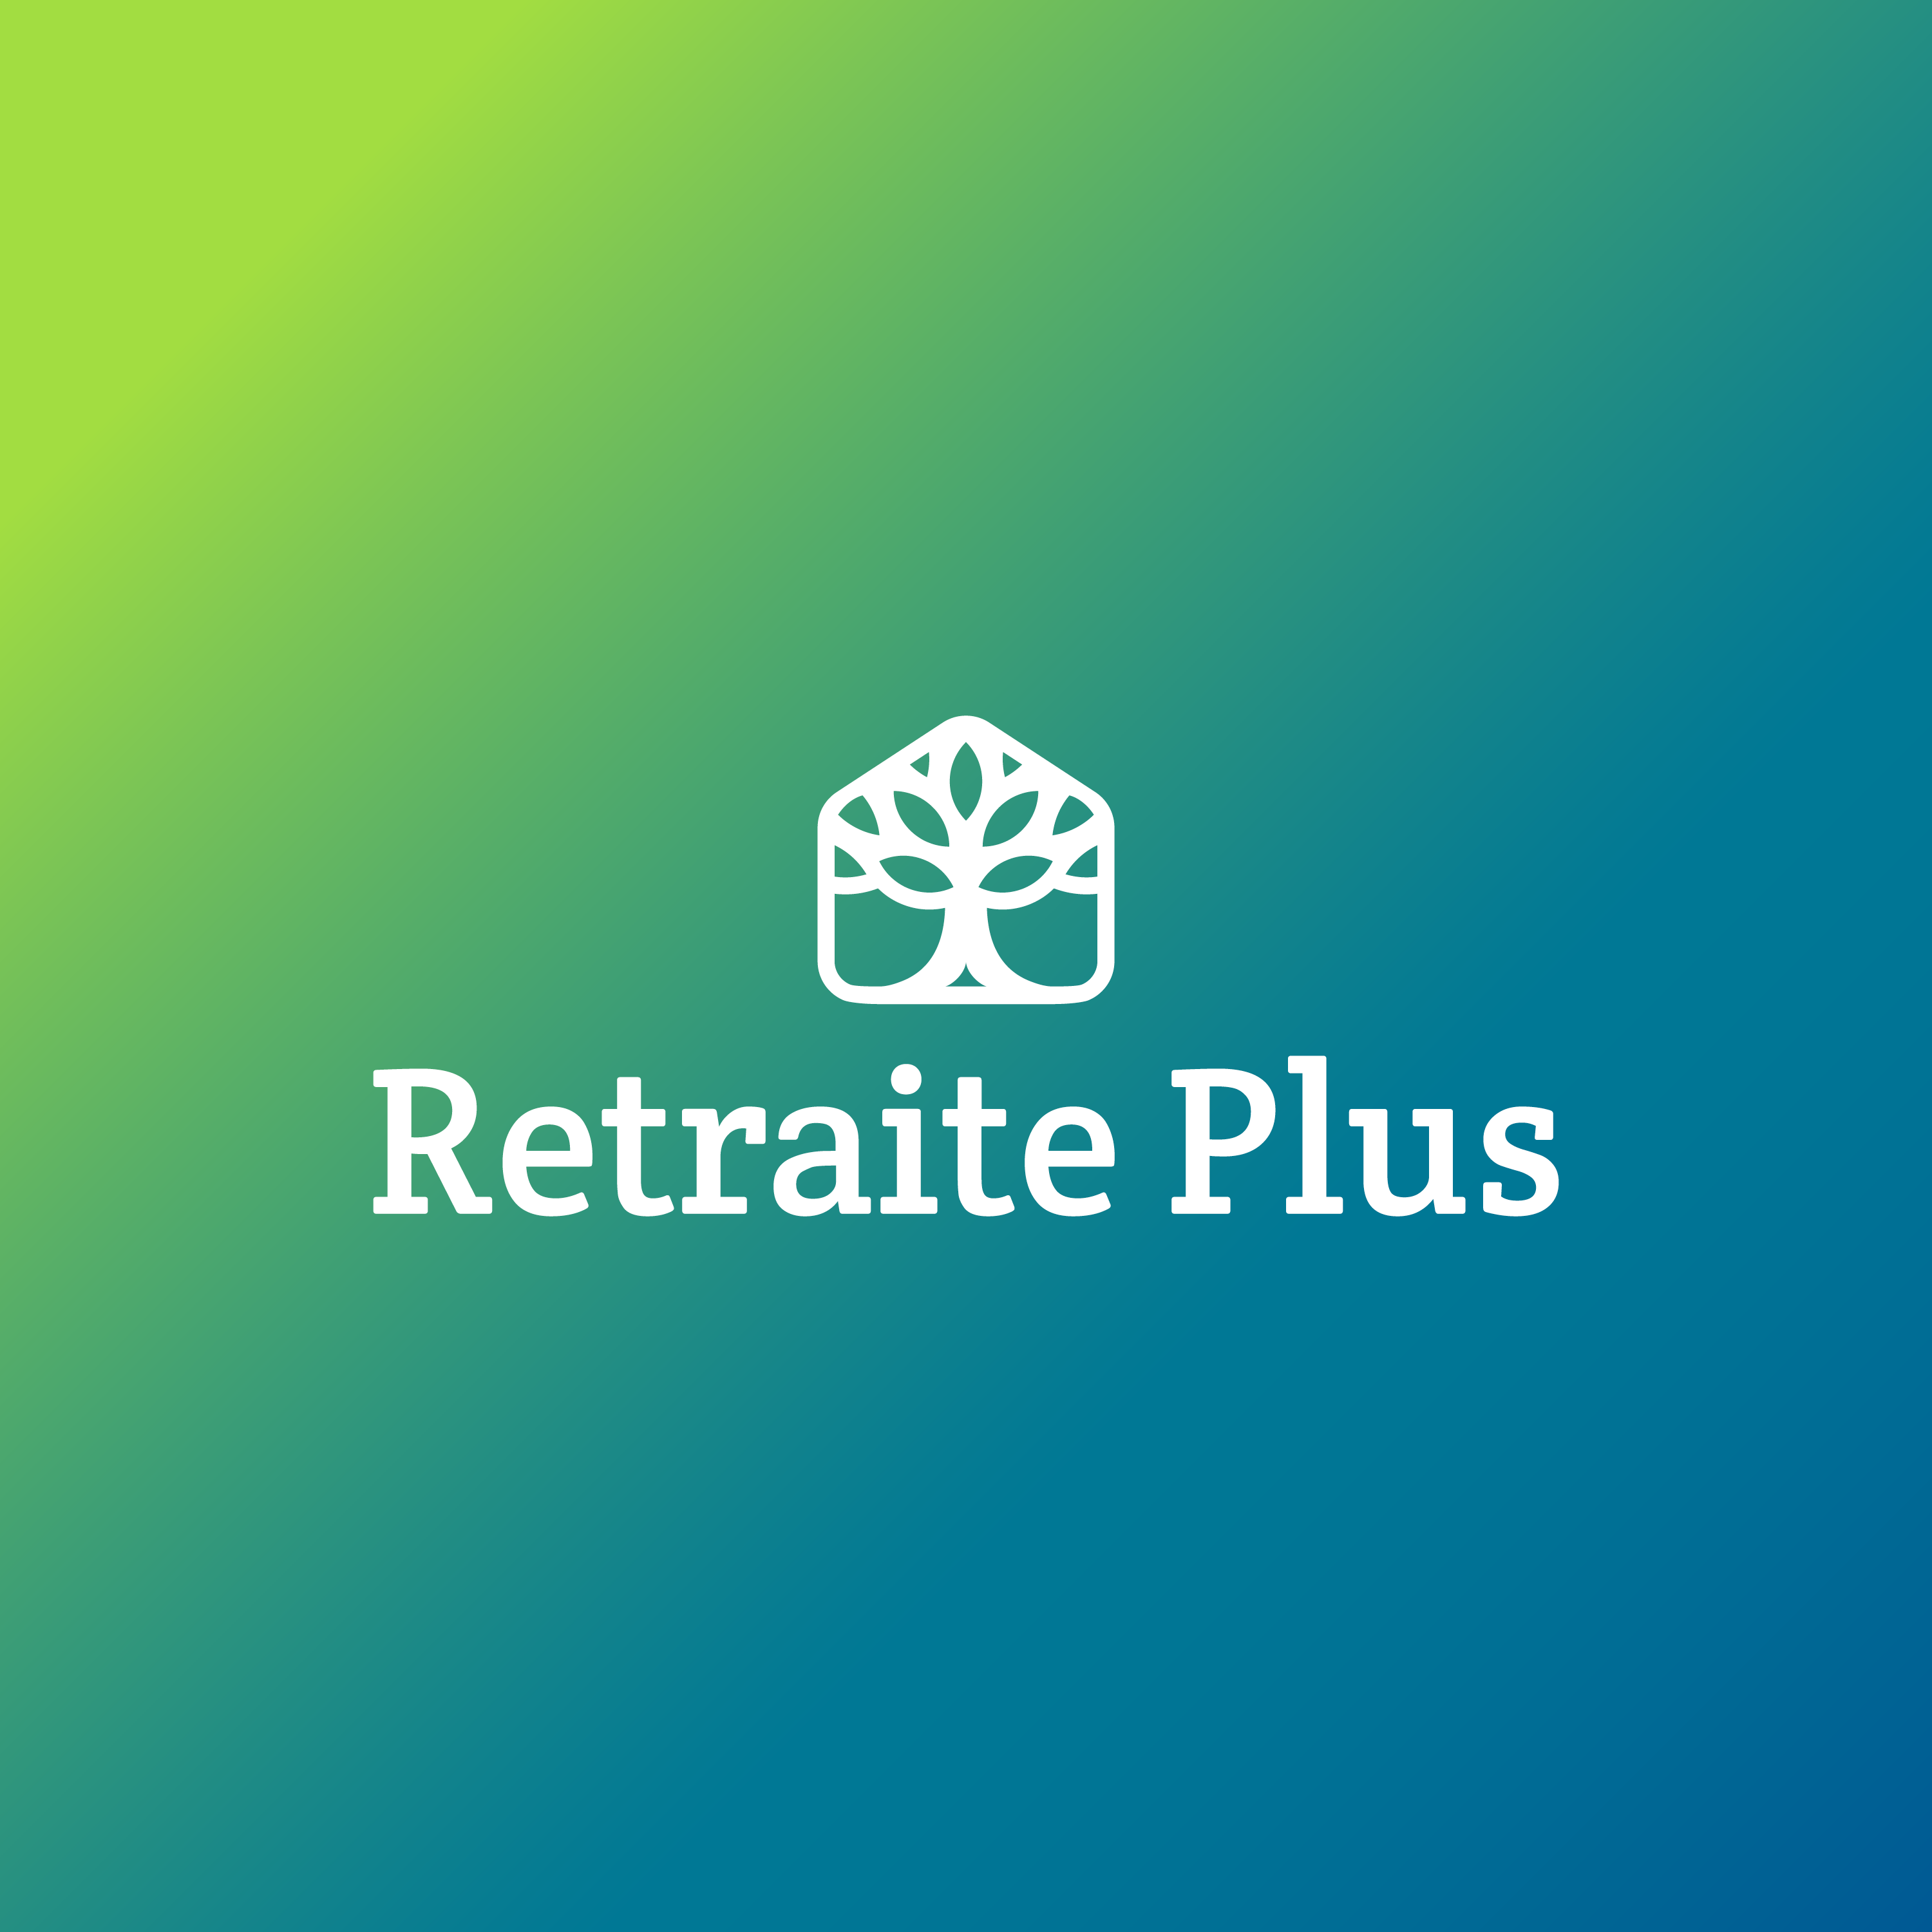 retraite Plus logo